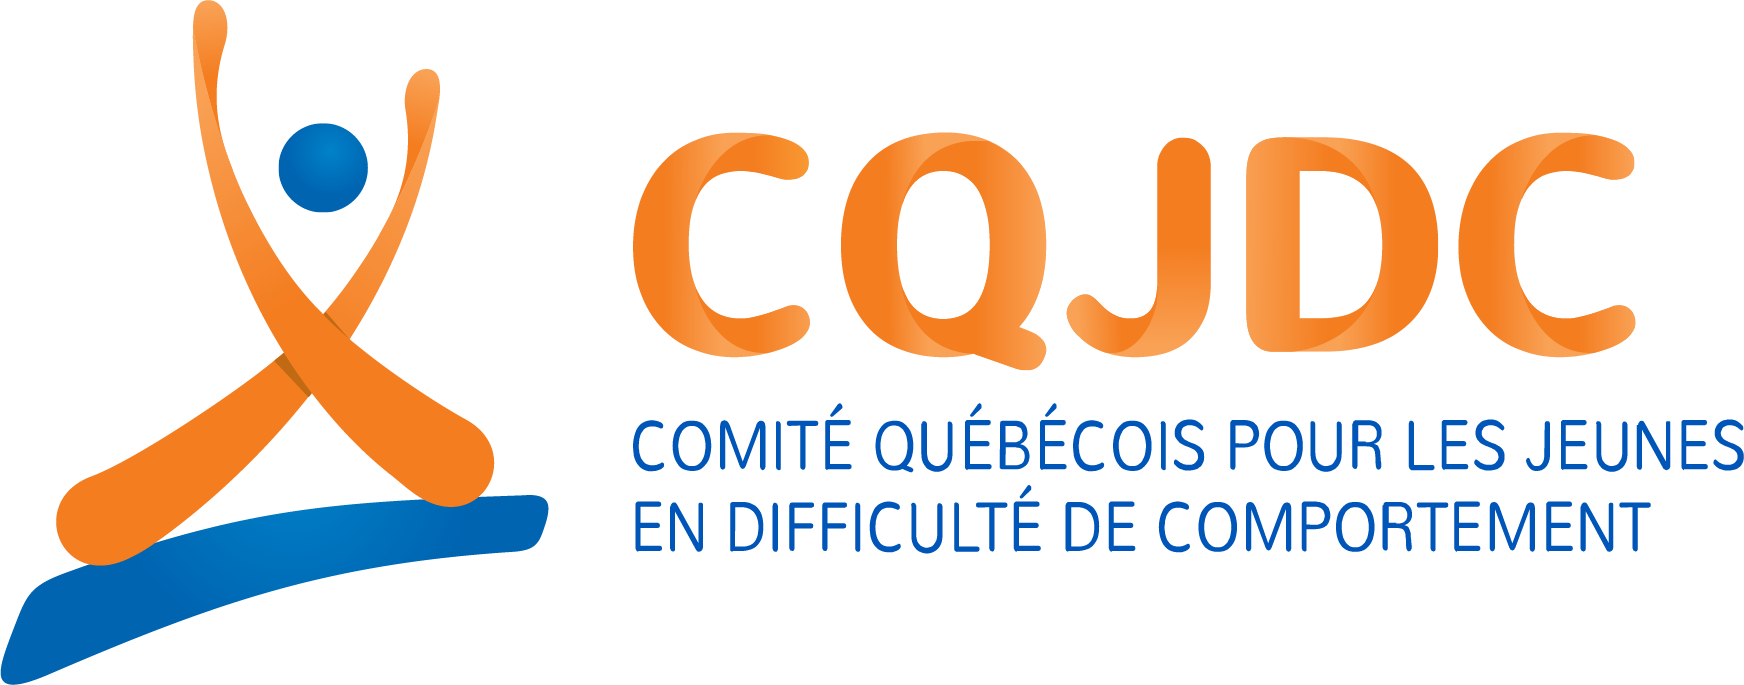 Logo Comité québécois pour les jeunes en difficulté de comportement